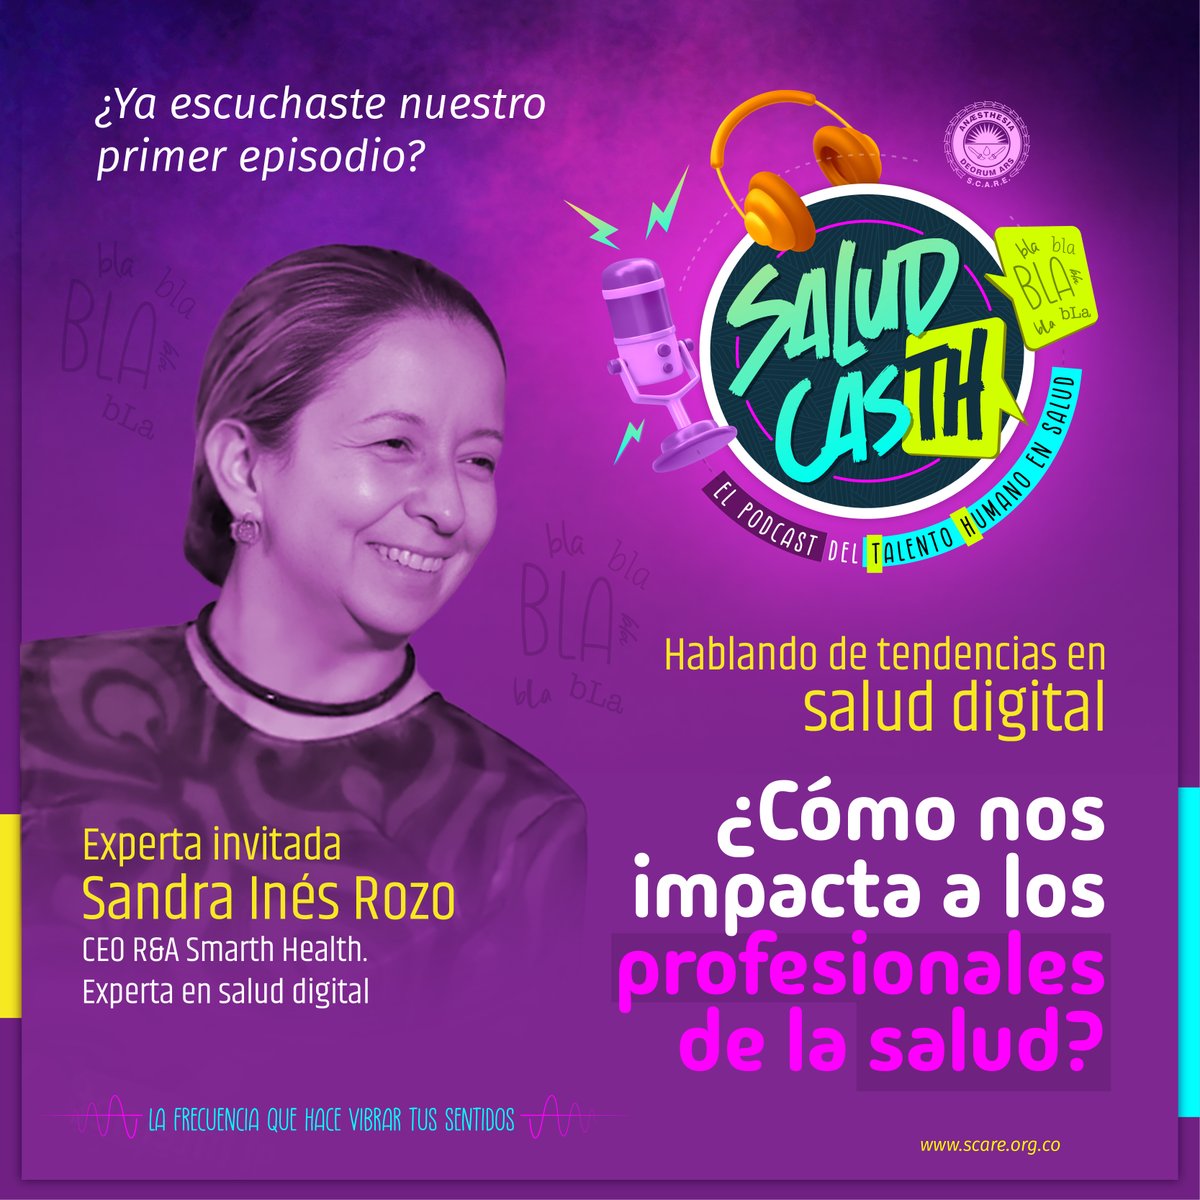 ¡Novedades emocionantes! 🌟  Nuestra CEO, la Dra. Sandra Rozo Bolaños, fue la oradora principal en SALUD CASTH, abordando 'Tendencias en salud digital'. Escucha el episodio aquí: lnkd.in/gcQZQDQh  Gracias a @scarecolombia #SaludDigital #LiderazgoEnSalud #InnovaciónEnSalud